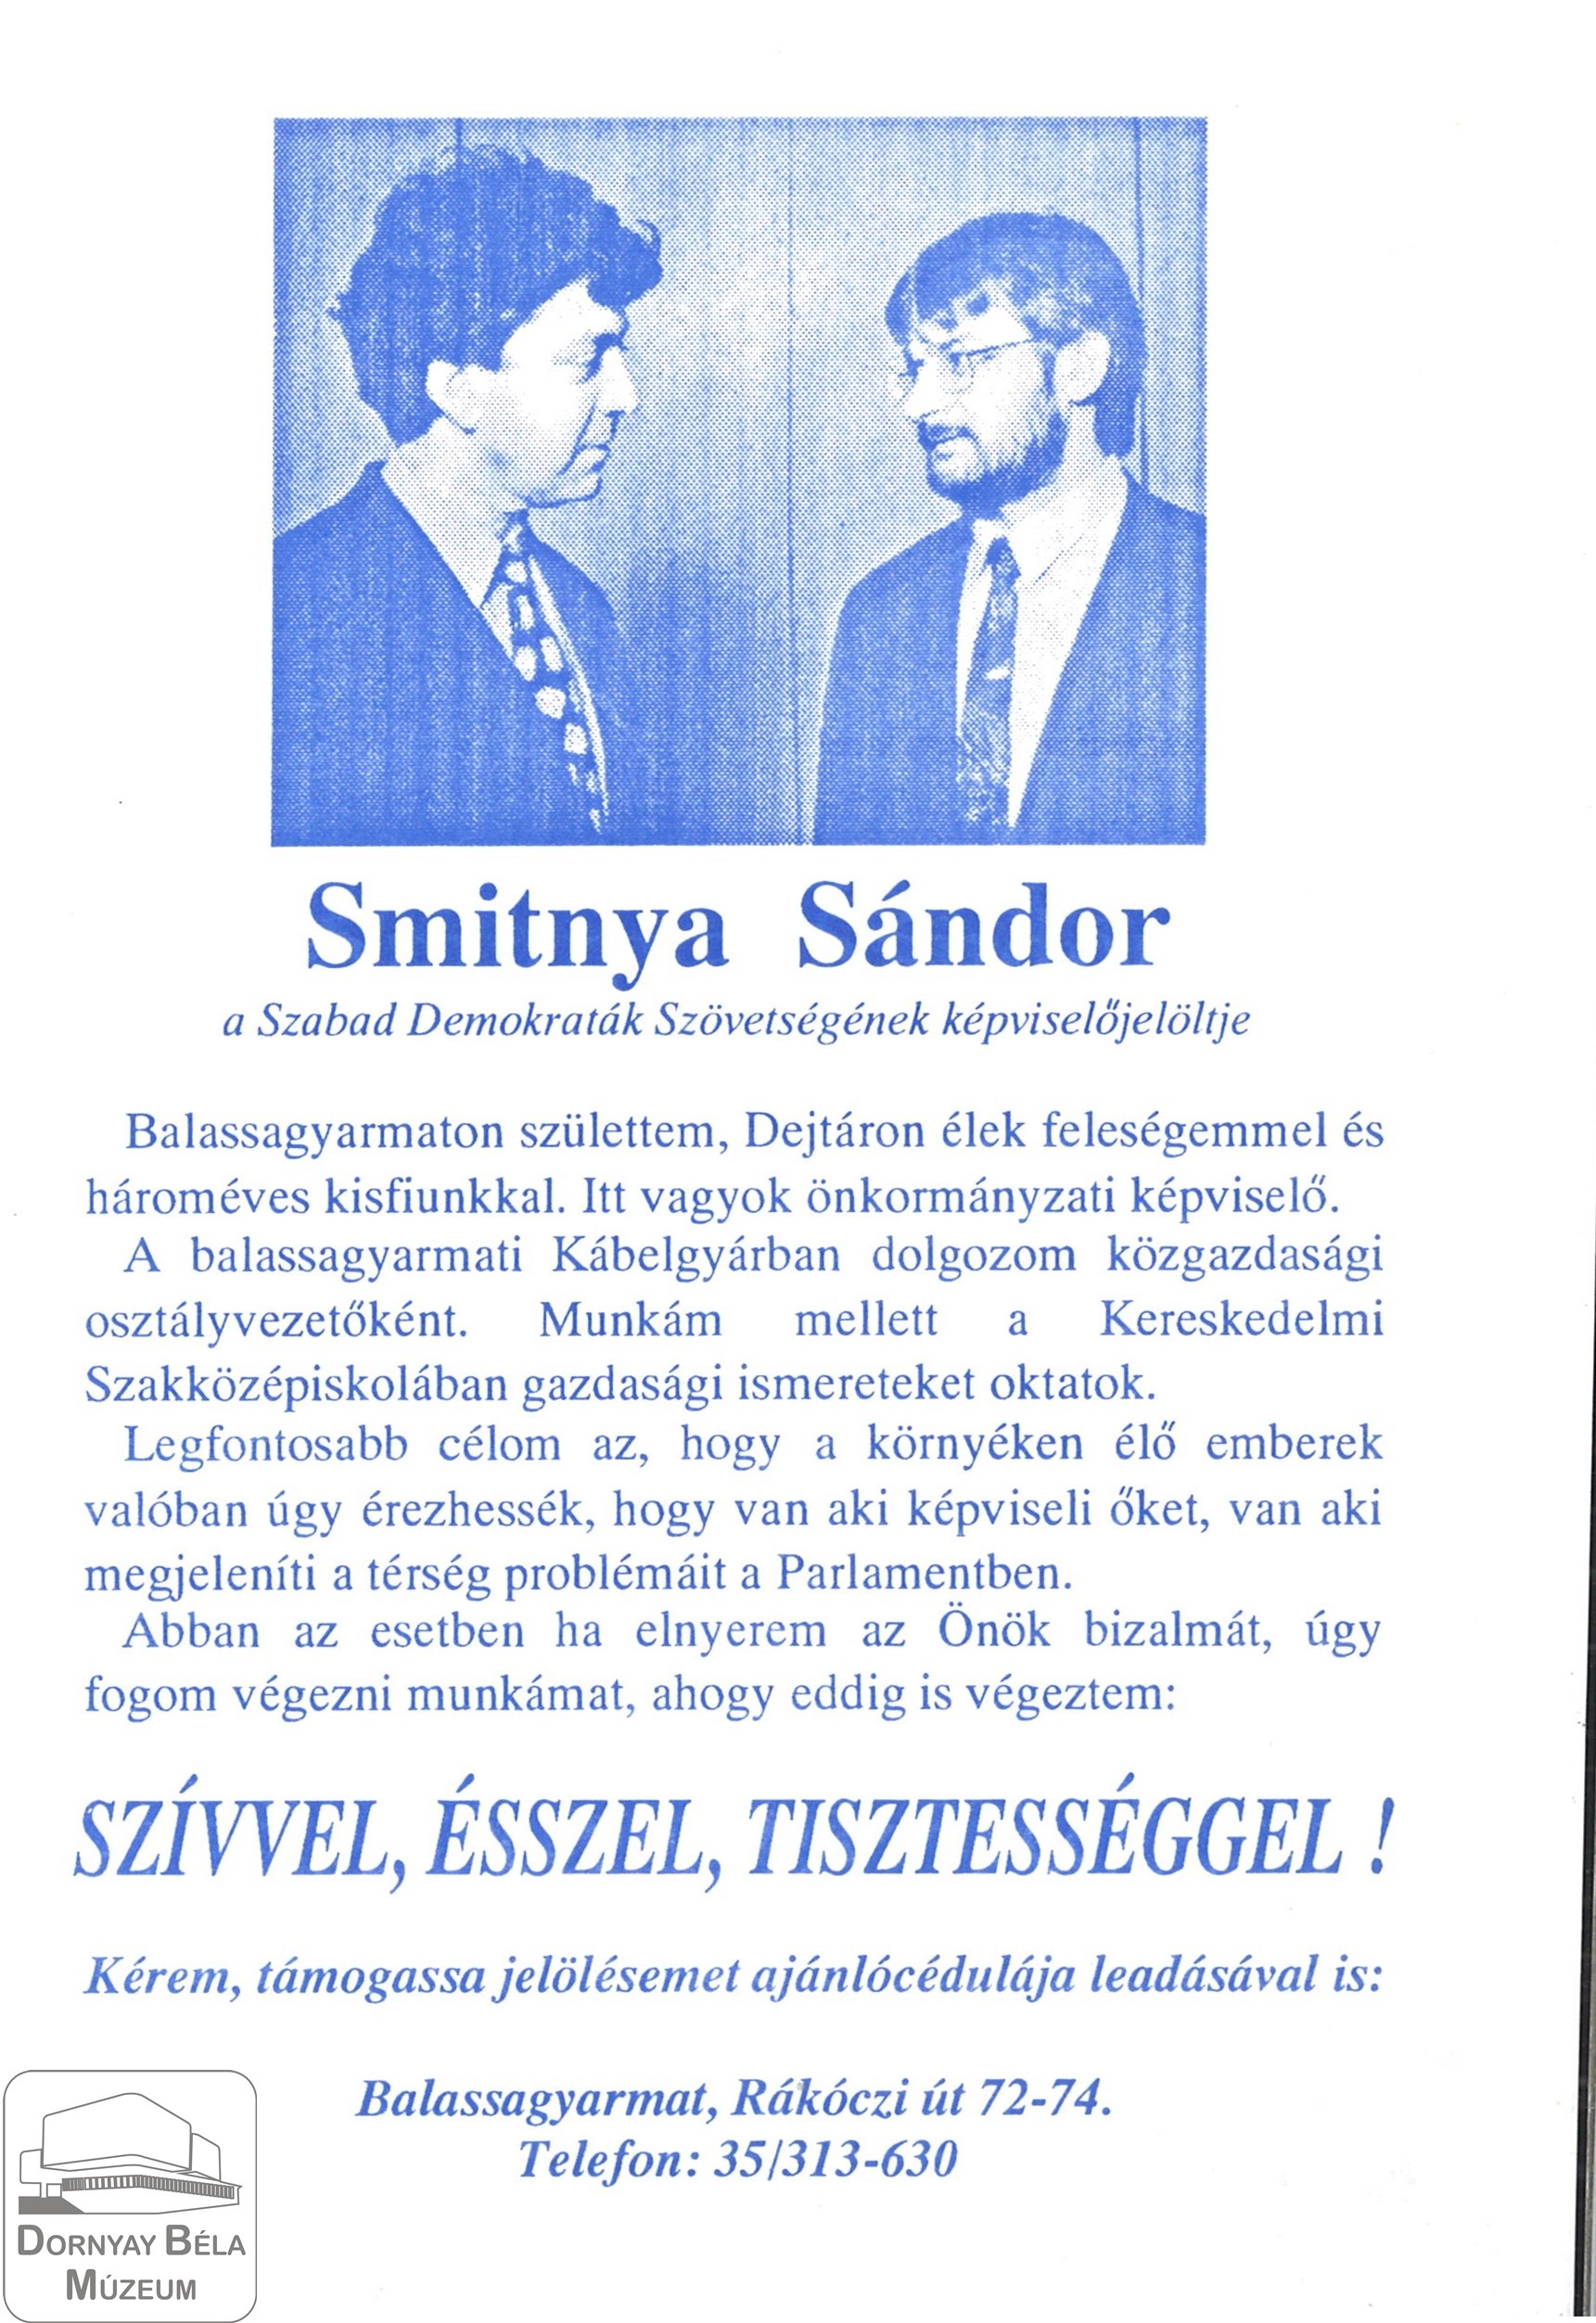 Smitnya Sándor a Szabad Demokraták szövetségének képviselőjelöltje (Dornyay Béla Múzeum, Salgótarján CC BY-NC-SA)